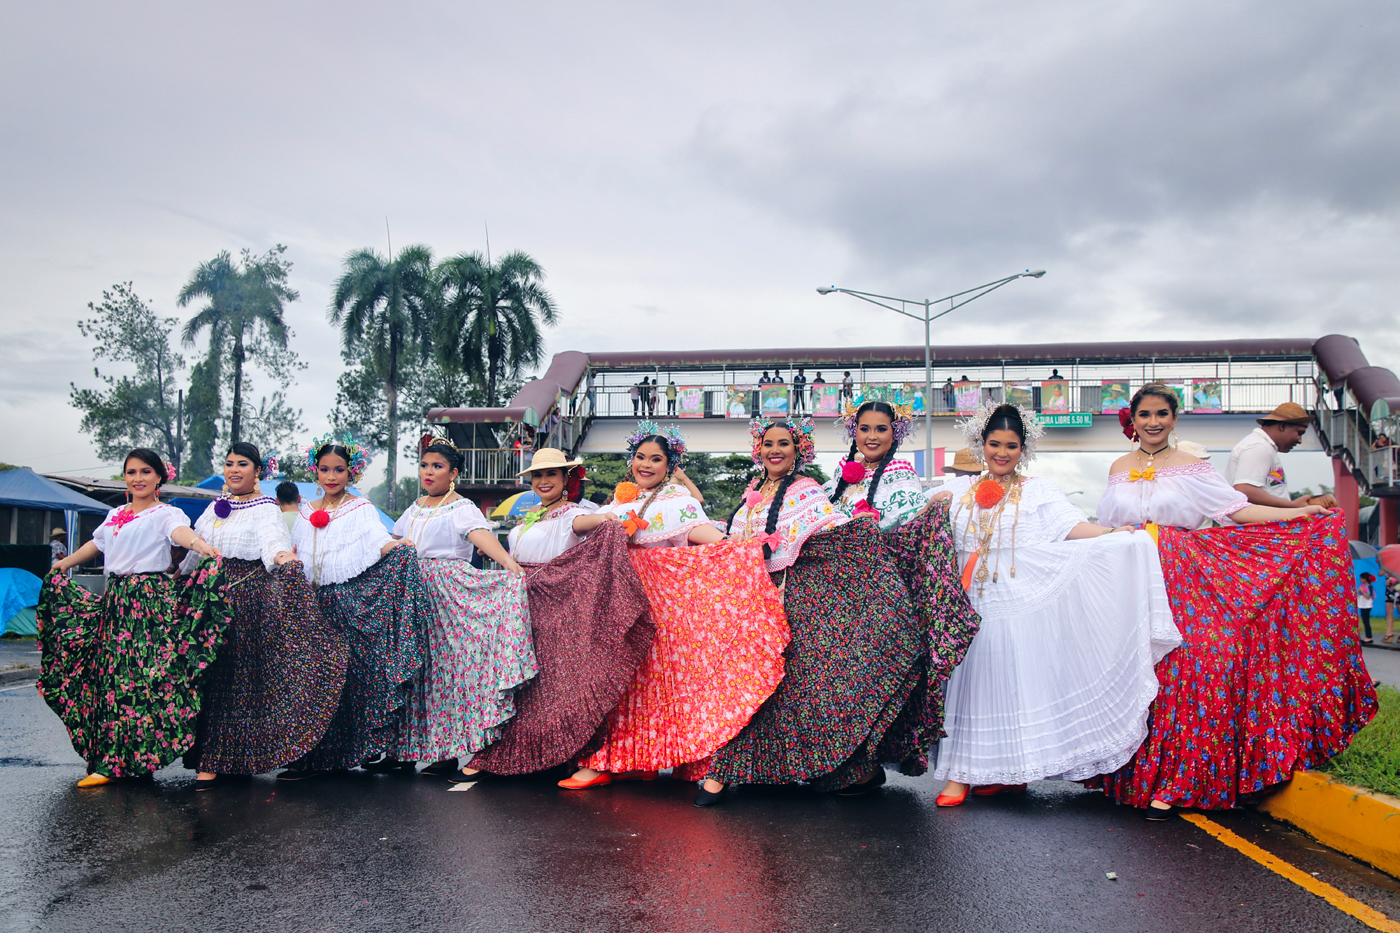 Момичета облечени в традиционнa pollera (пойери). Панама